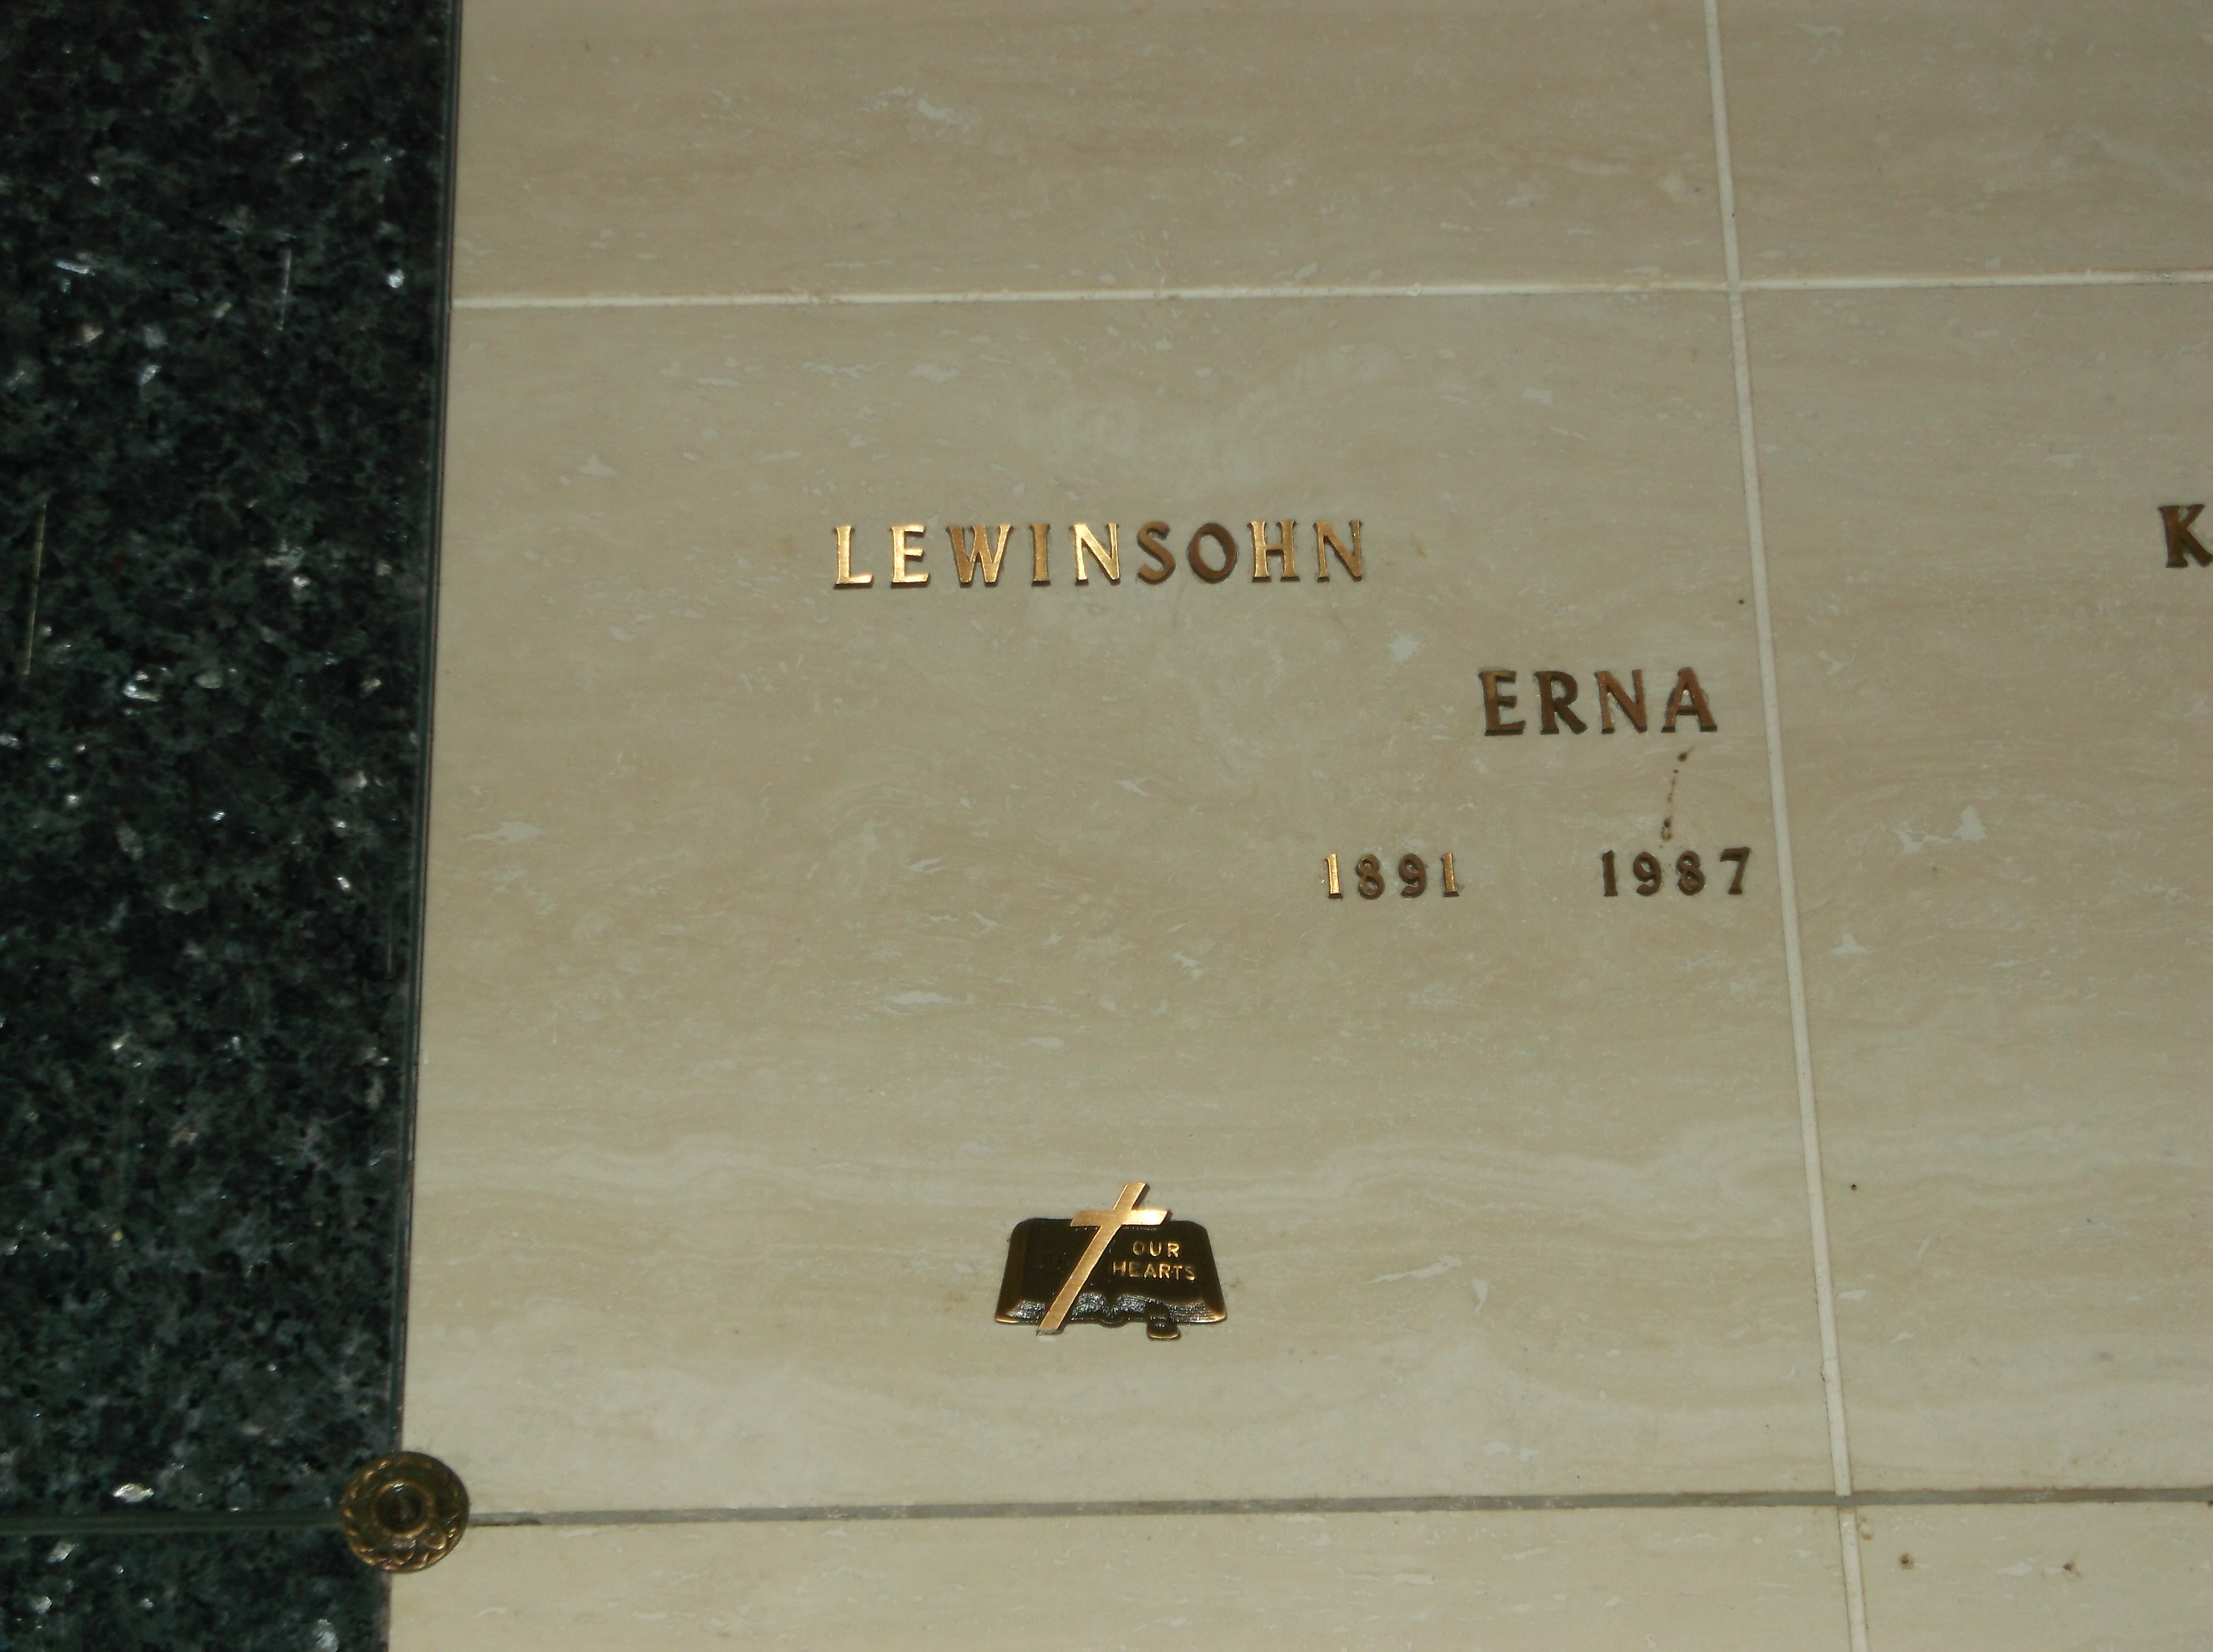 Erna Lewinsohn